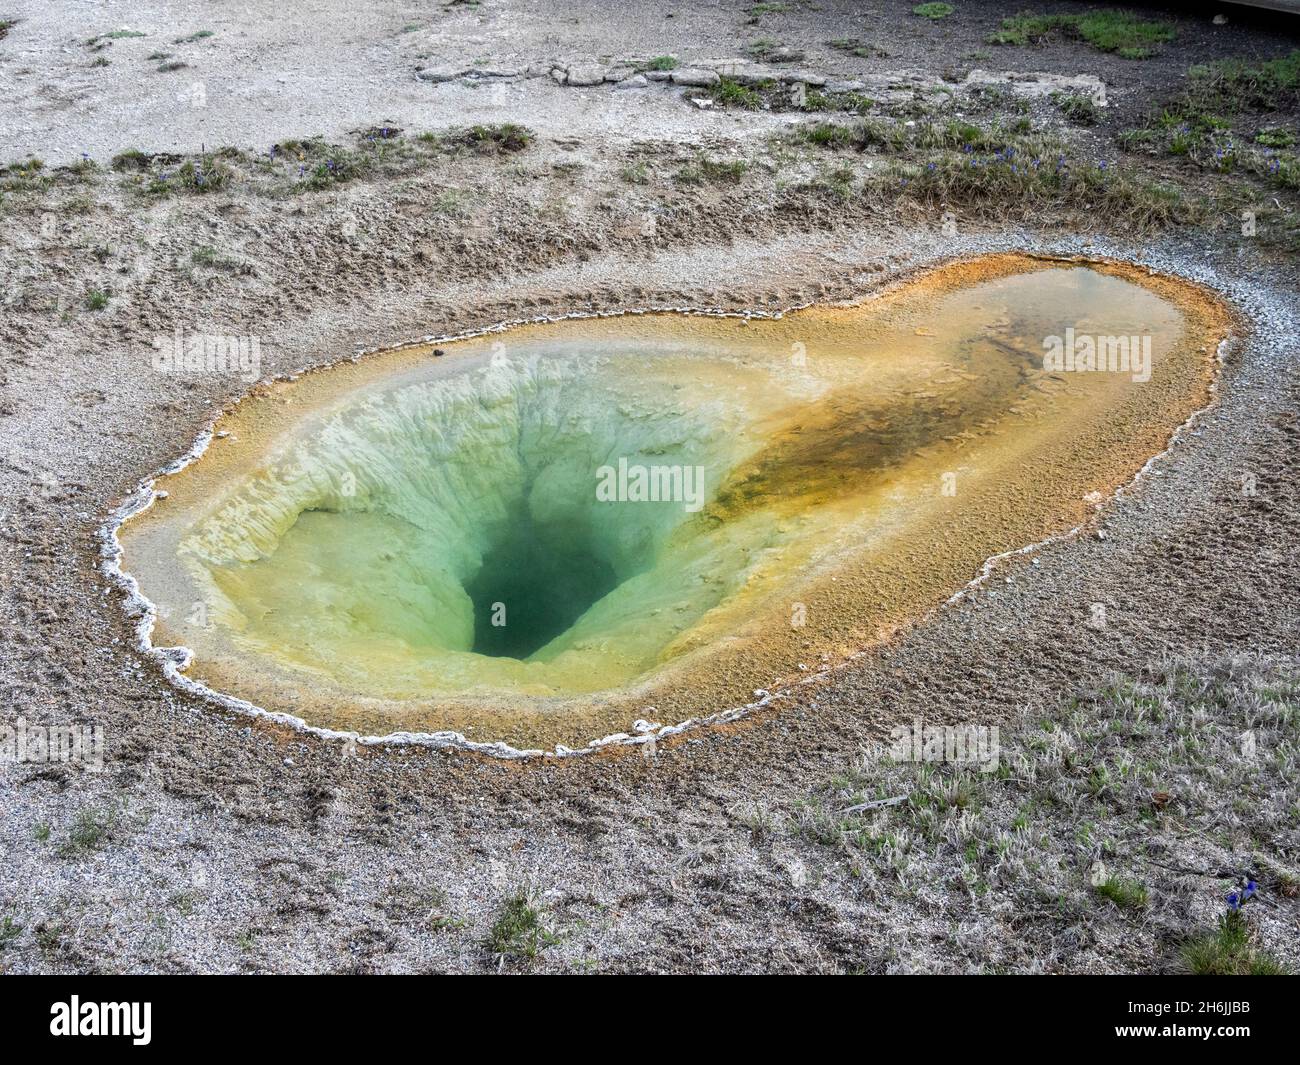 Belgian Pool, nell'area di Norris Geyser Basin, Yellowstone National Park, sito patrimonio dell'umanità dell'UNESCO, Wyoming, Stati Uniti d'America Foto Stock